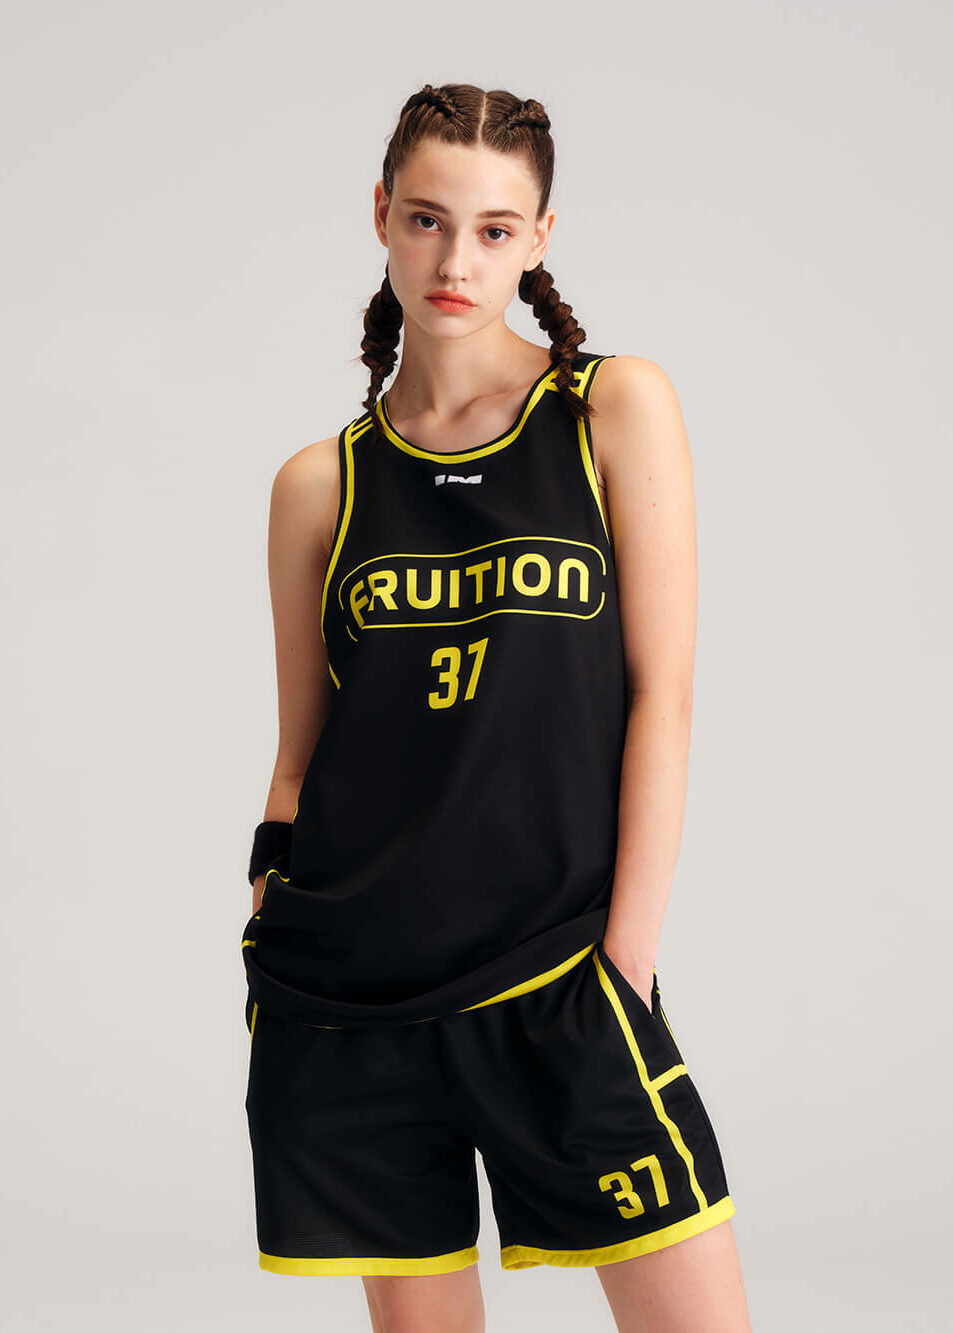 imbc-籃球-客製化籃球衣-籃球服-球衣訂製